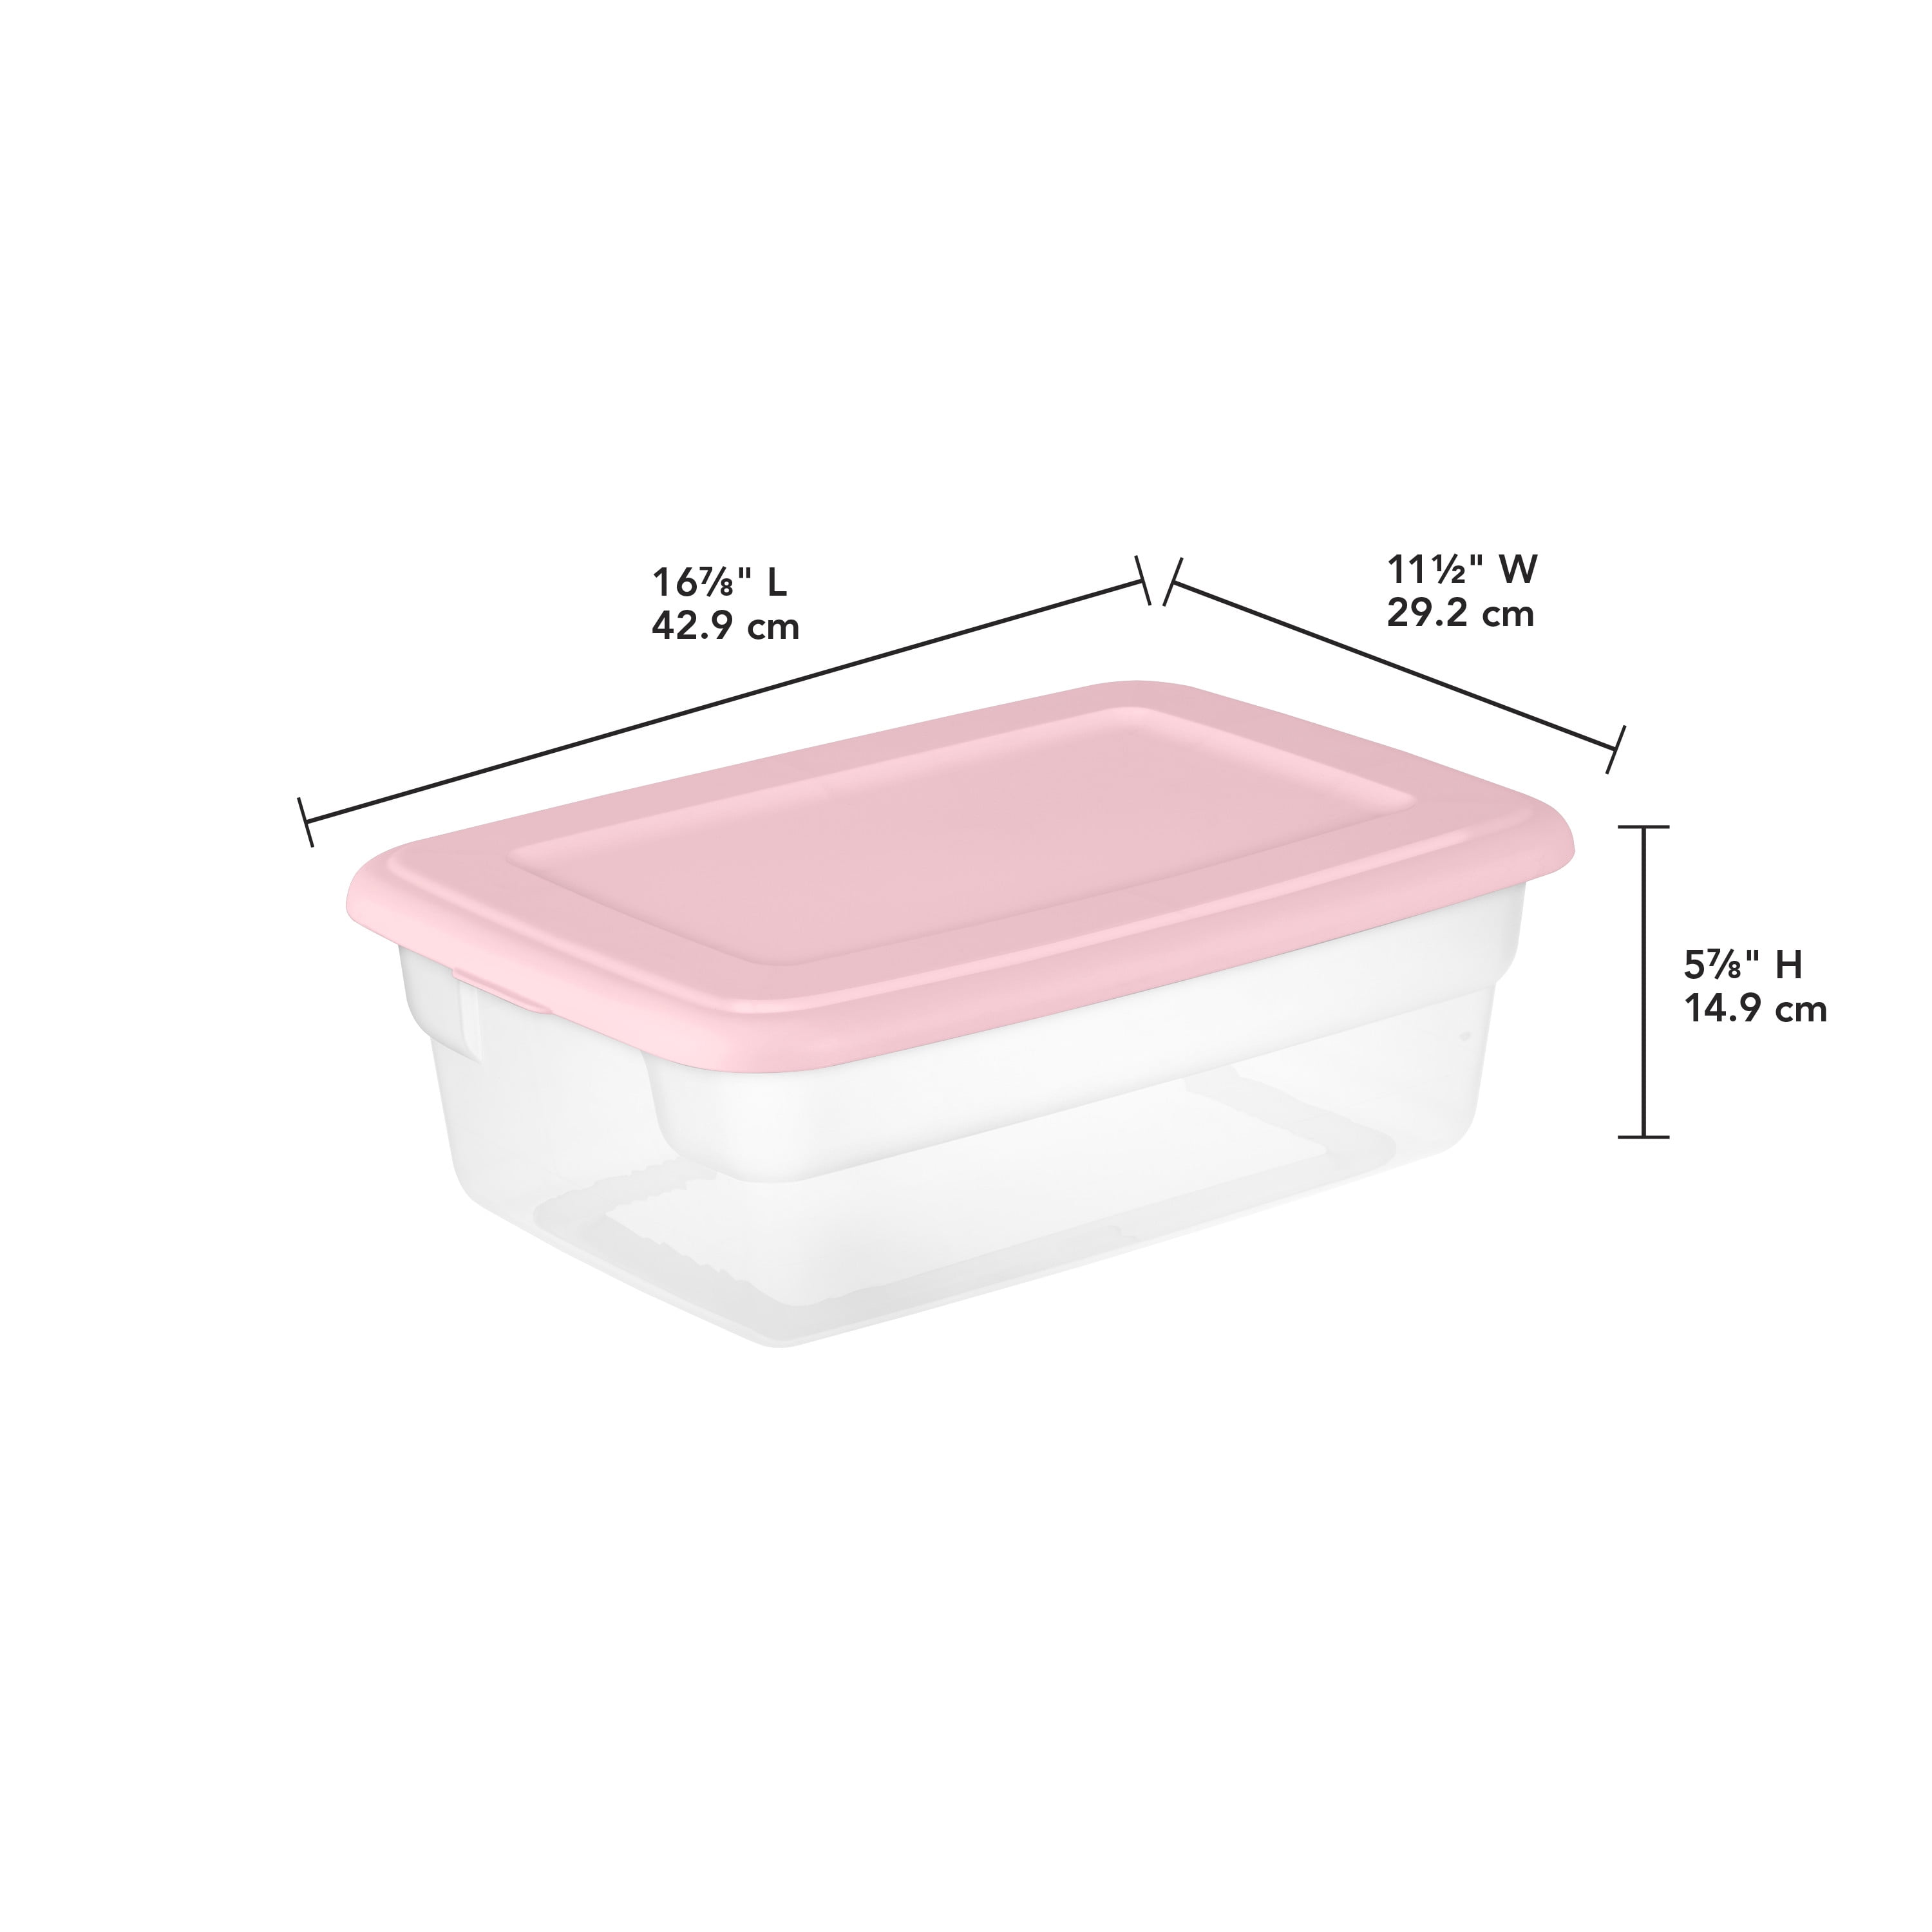 Sterilite 3 Gallon Plastic Storage Box, Pink and Clear, 4 Count